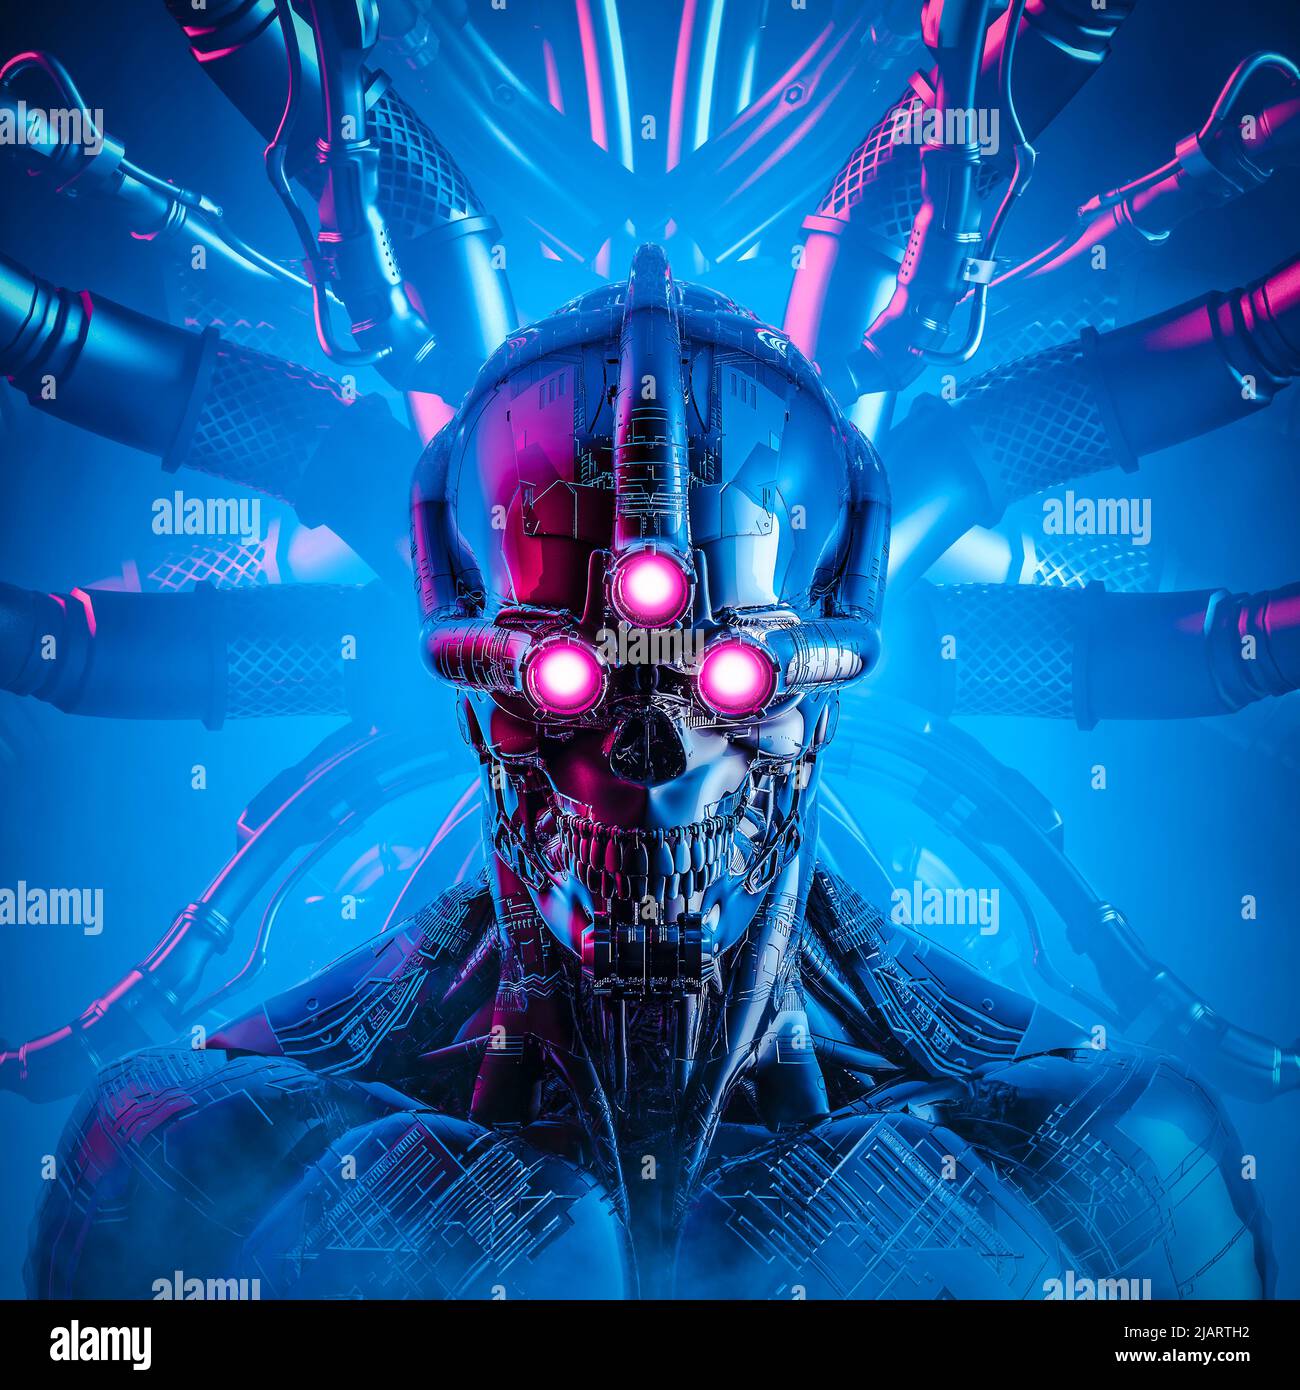 Triclops künstliche Intelligenz - 3D Illustration von Science Fiction Cyberpunk Schädel konfrontiert drei Augen Cyborg mit Computer-Kern verbunden Stockfoto